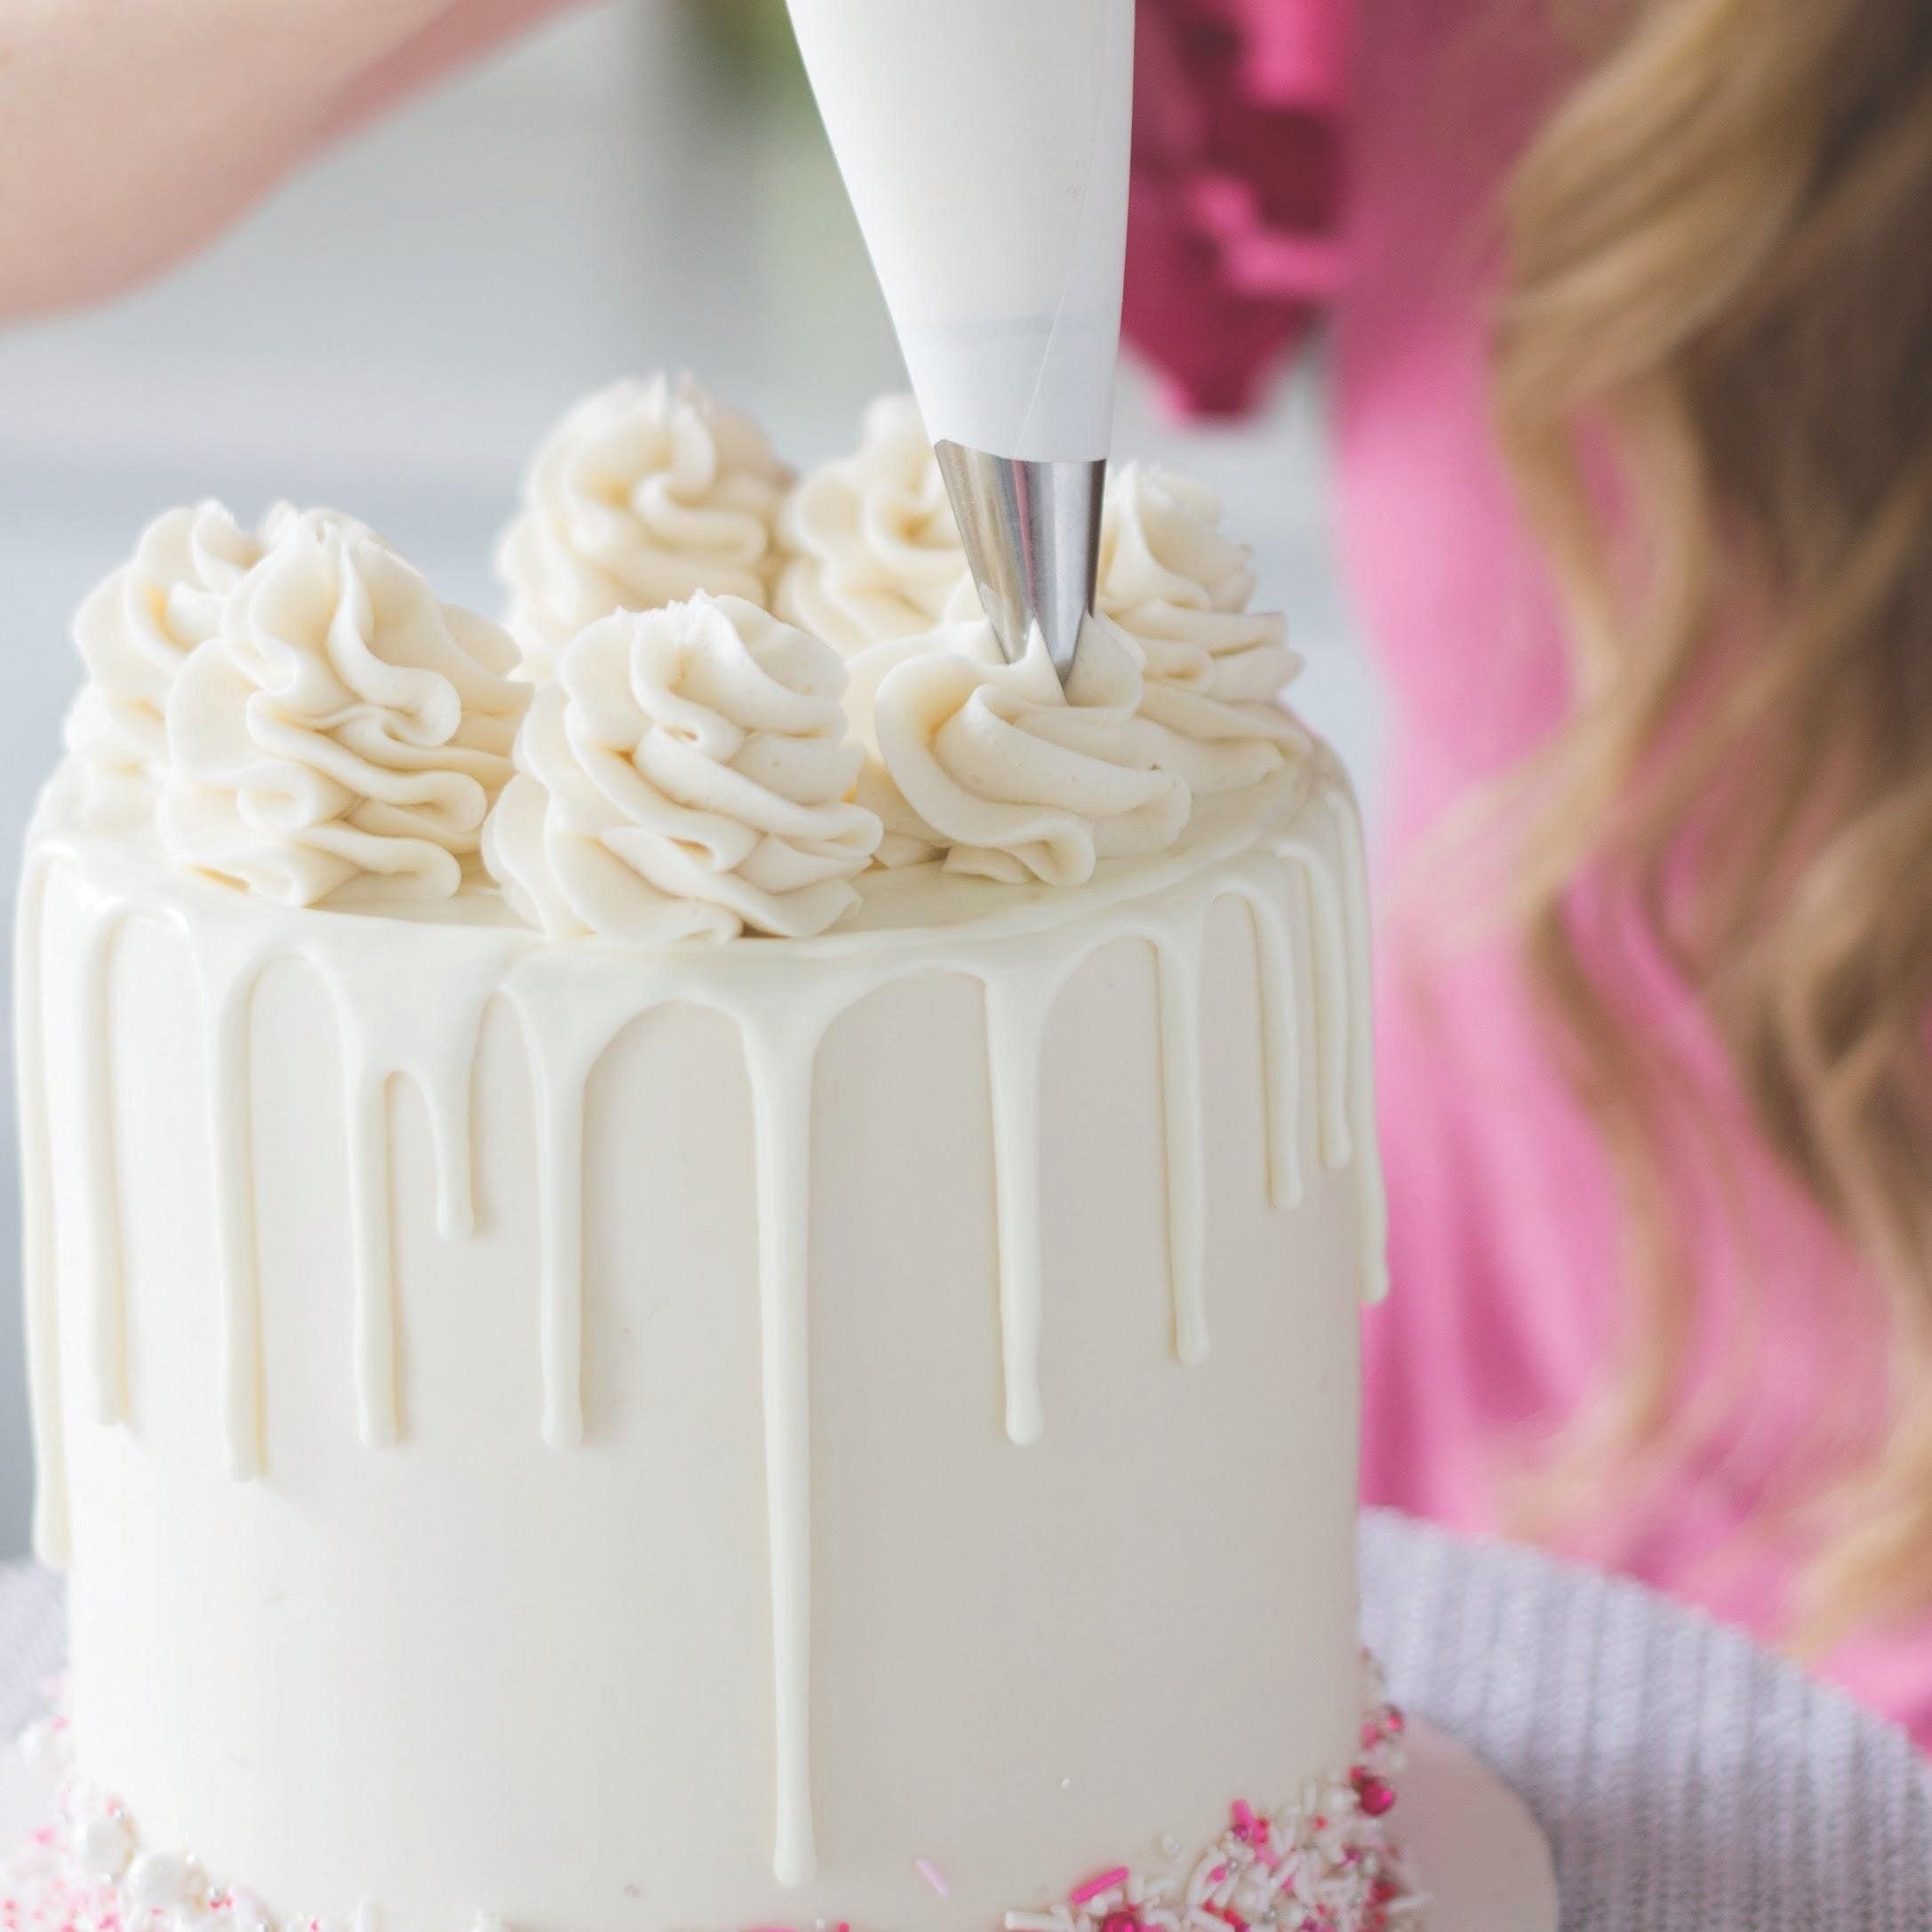 Cake Baking Tips  How to make cake, Cake decorating tips, Cake decorating  tutorials